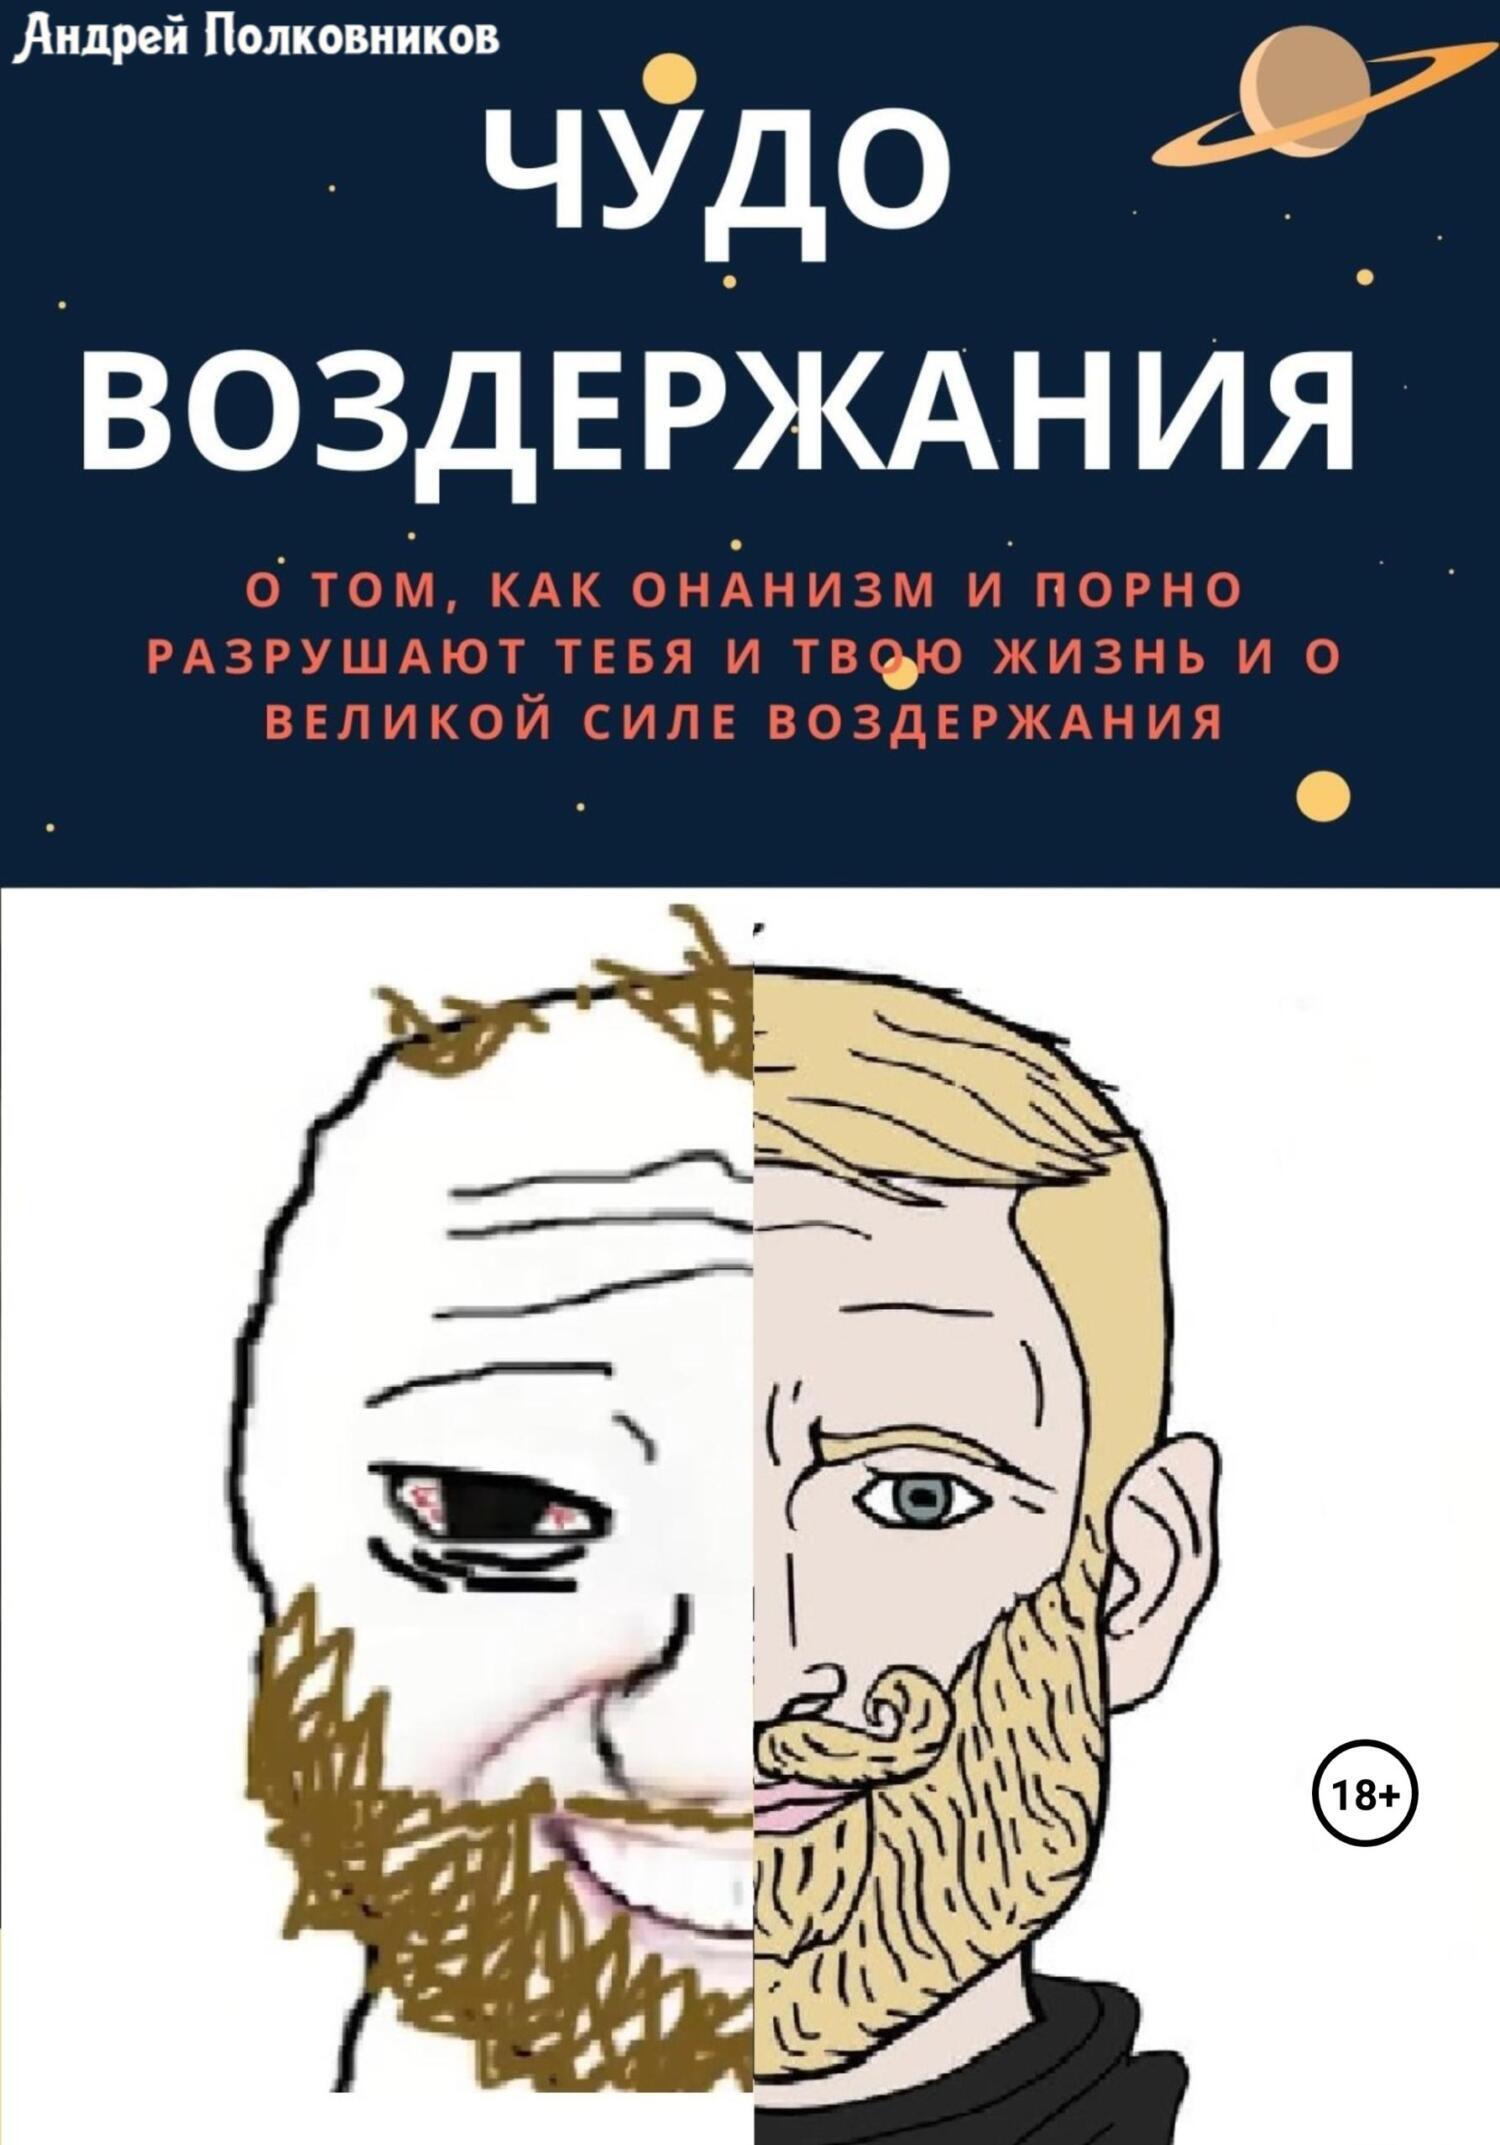 Чудо воздержания, Андрей Полковников – скачать книгу fb2, epub, pdf на  ЛитРес